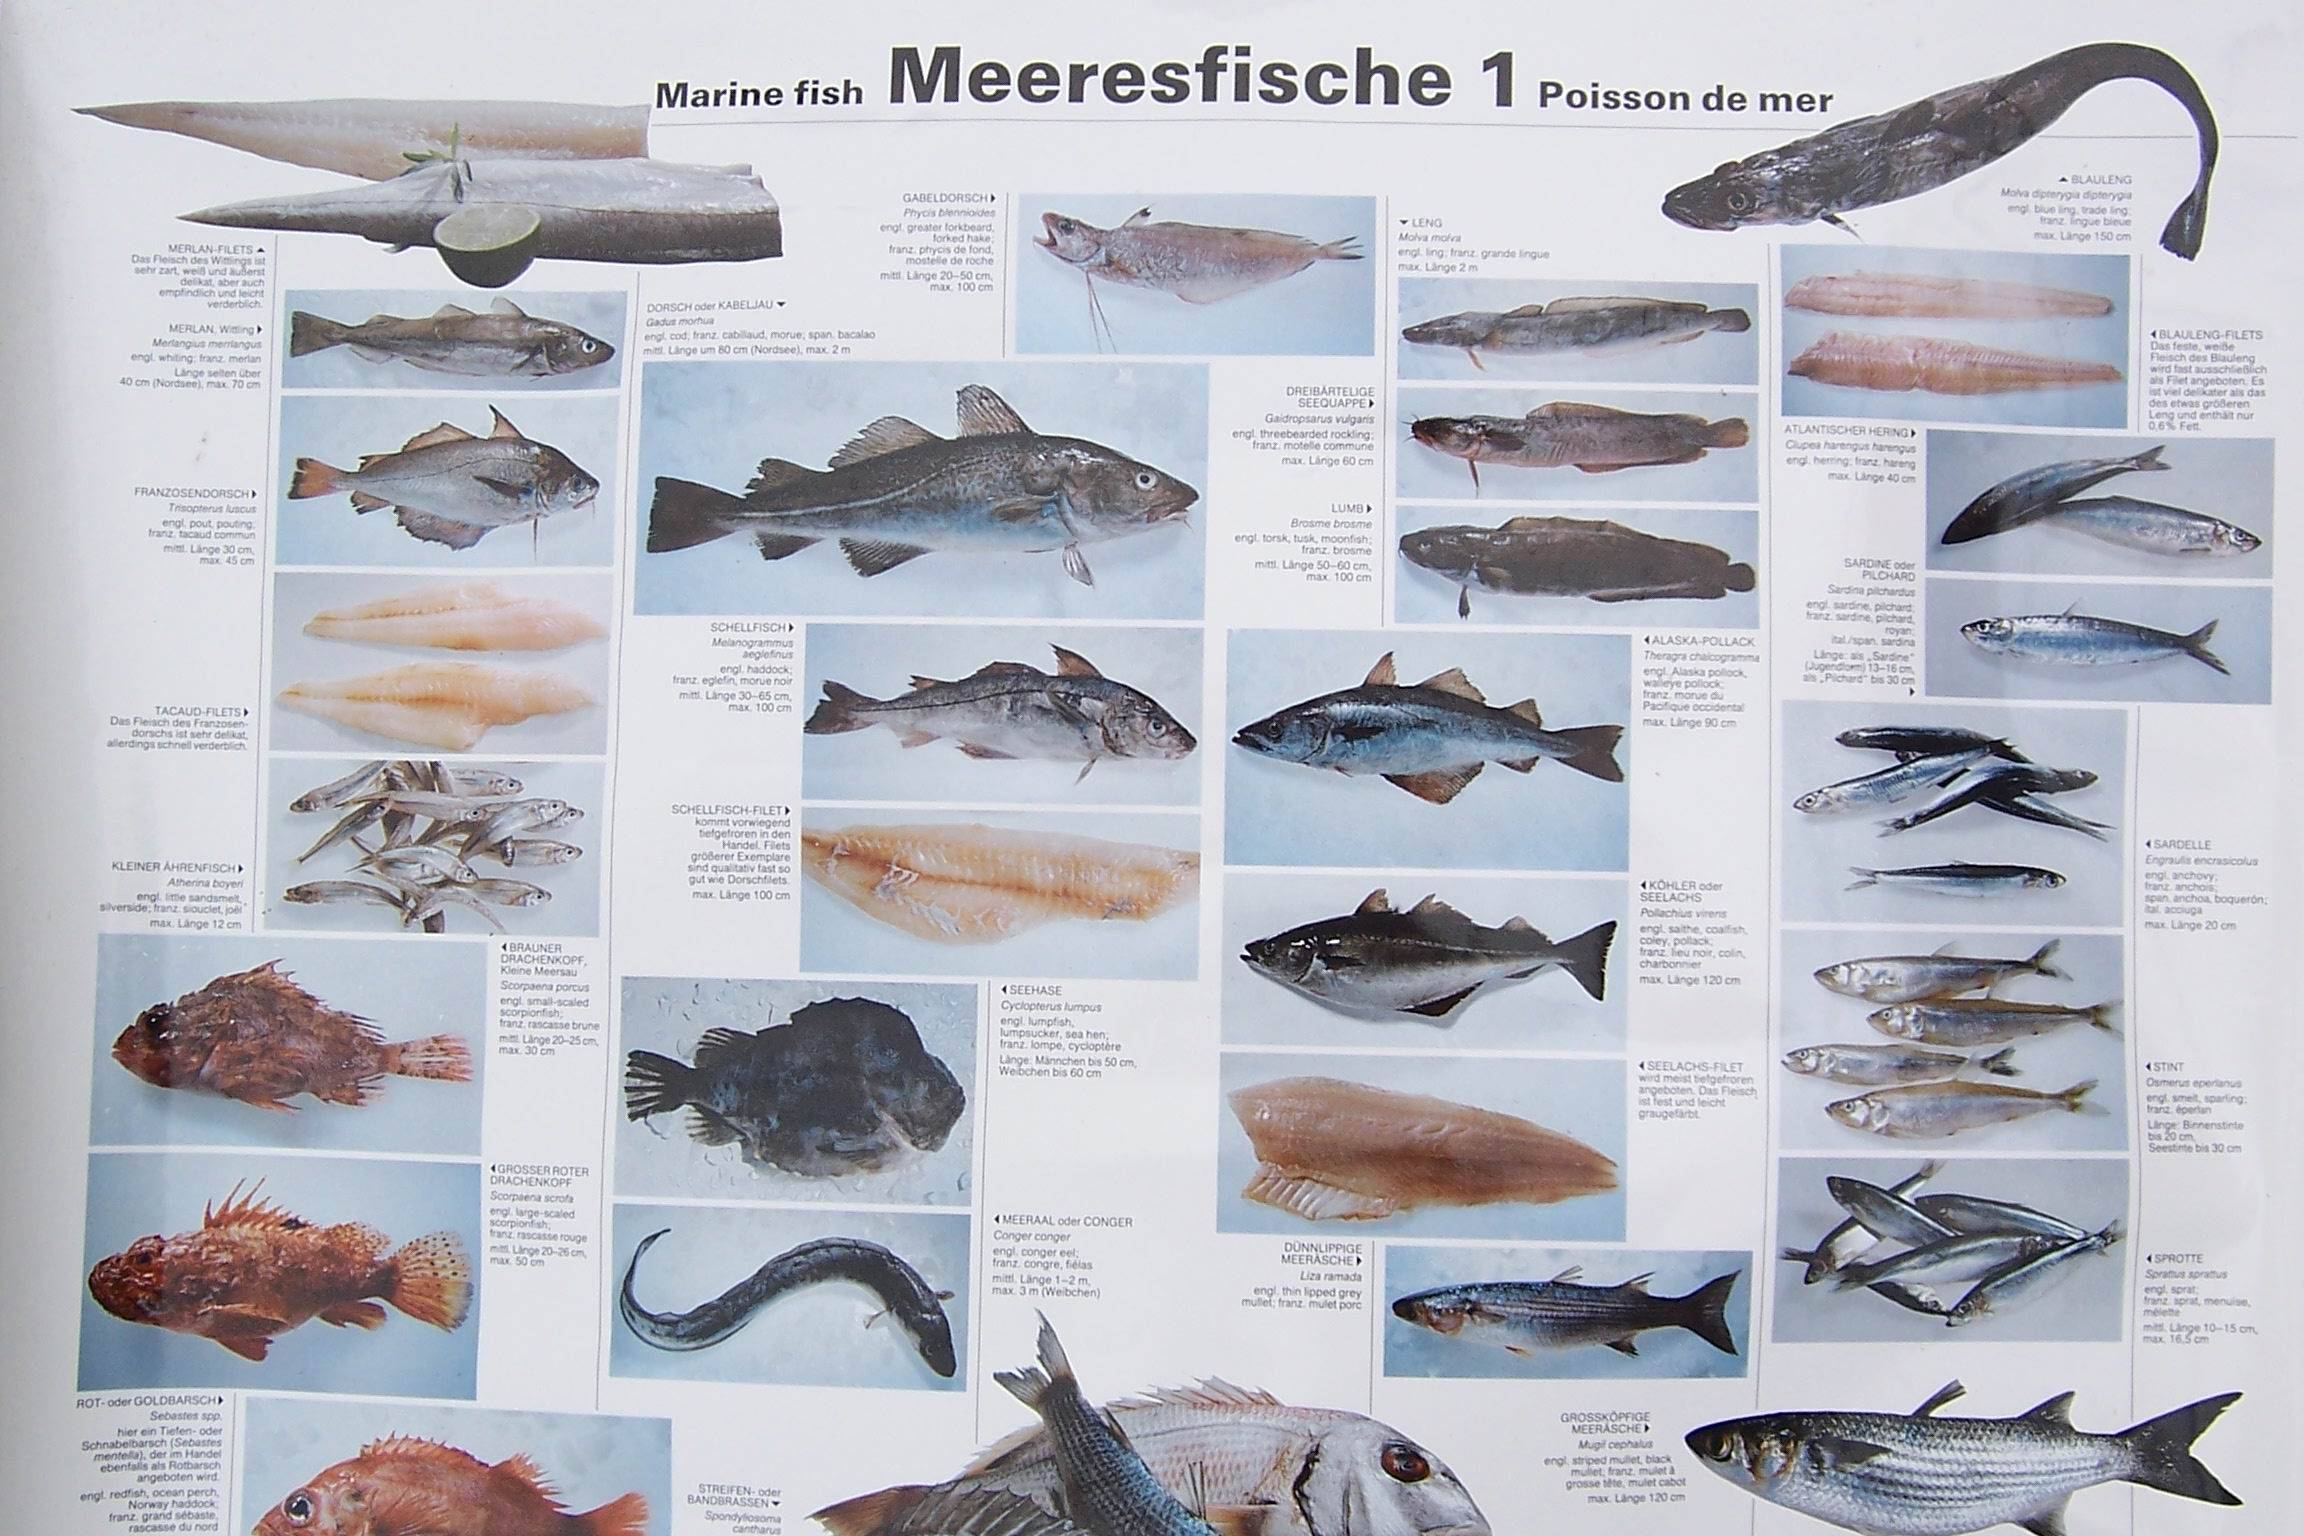 Сарг белый фото и описание – каталог рыб, смотреть онлайн